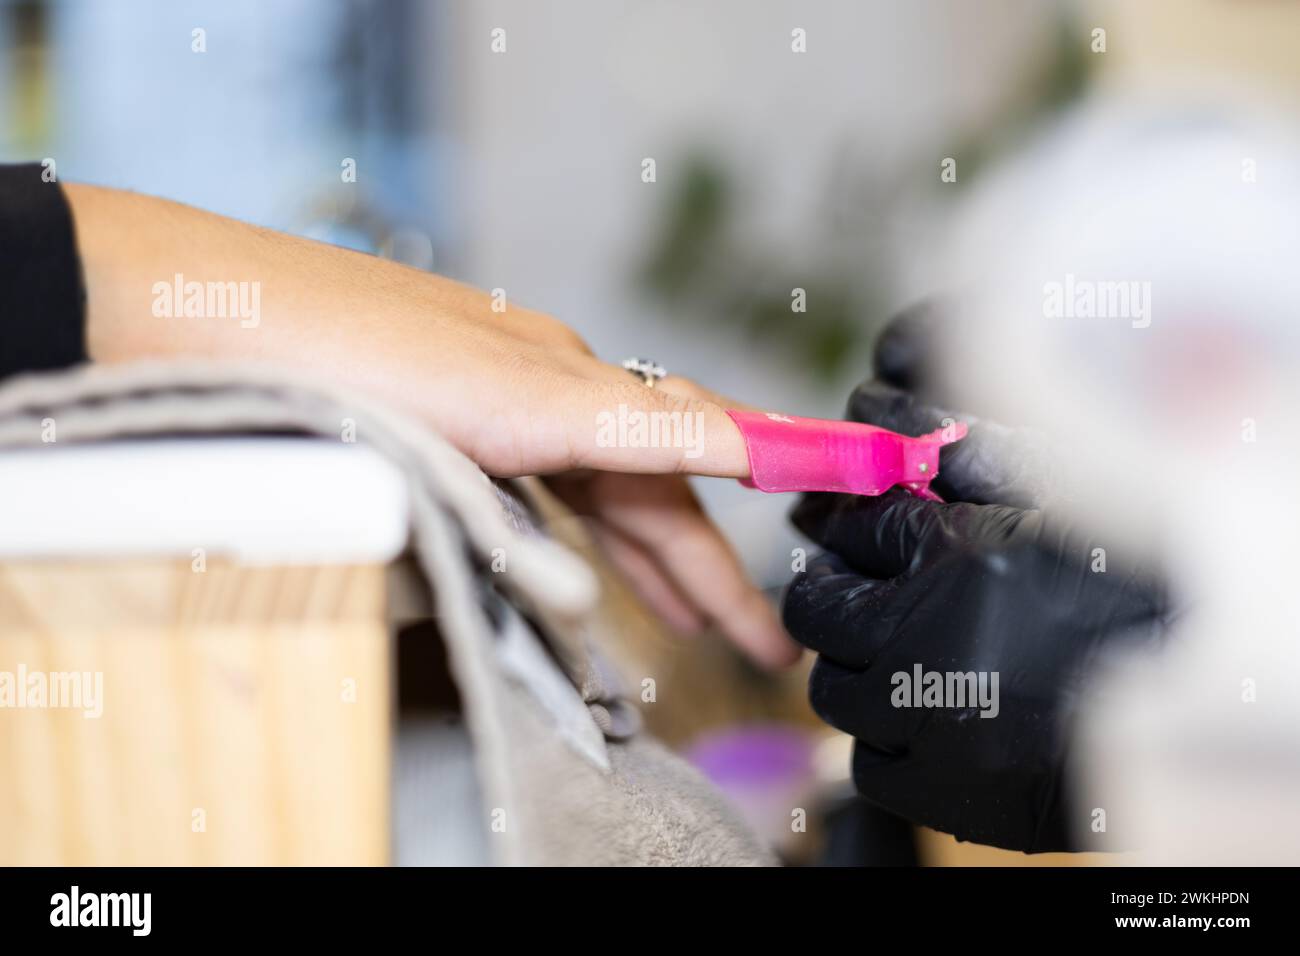 Manucure faisant la manucure de son client en enlevant le vernis des ongles. Traitement de manucure professionnel dans un salon de beauté. Hygiène et soins des mains dans l'industrie de la beauté. Banque D'Images